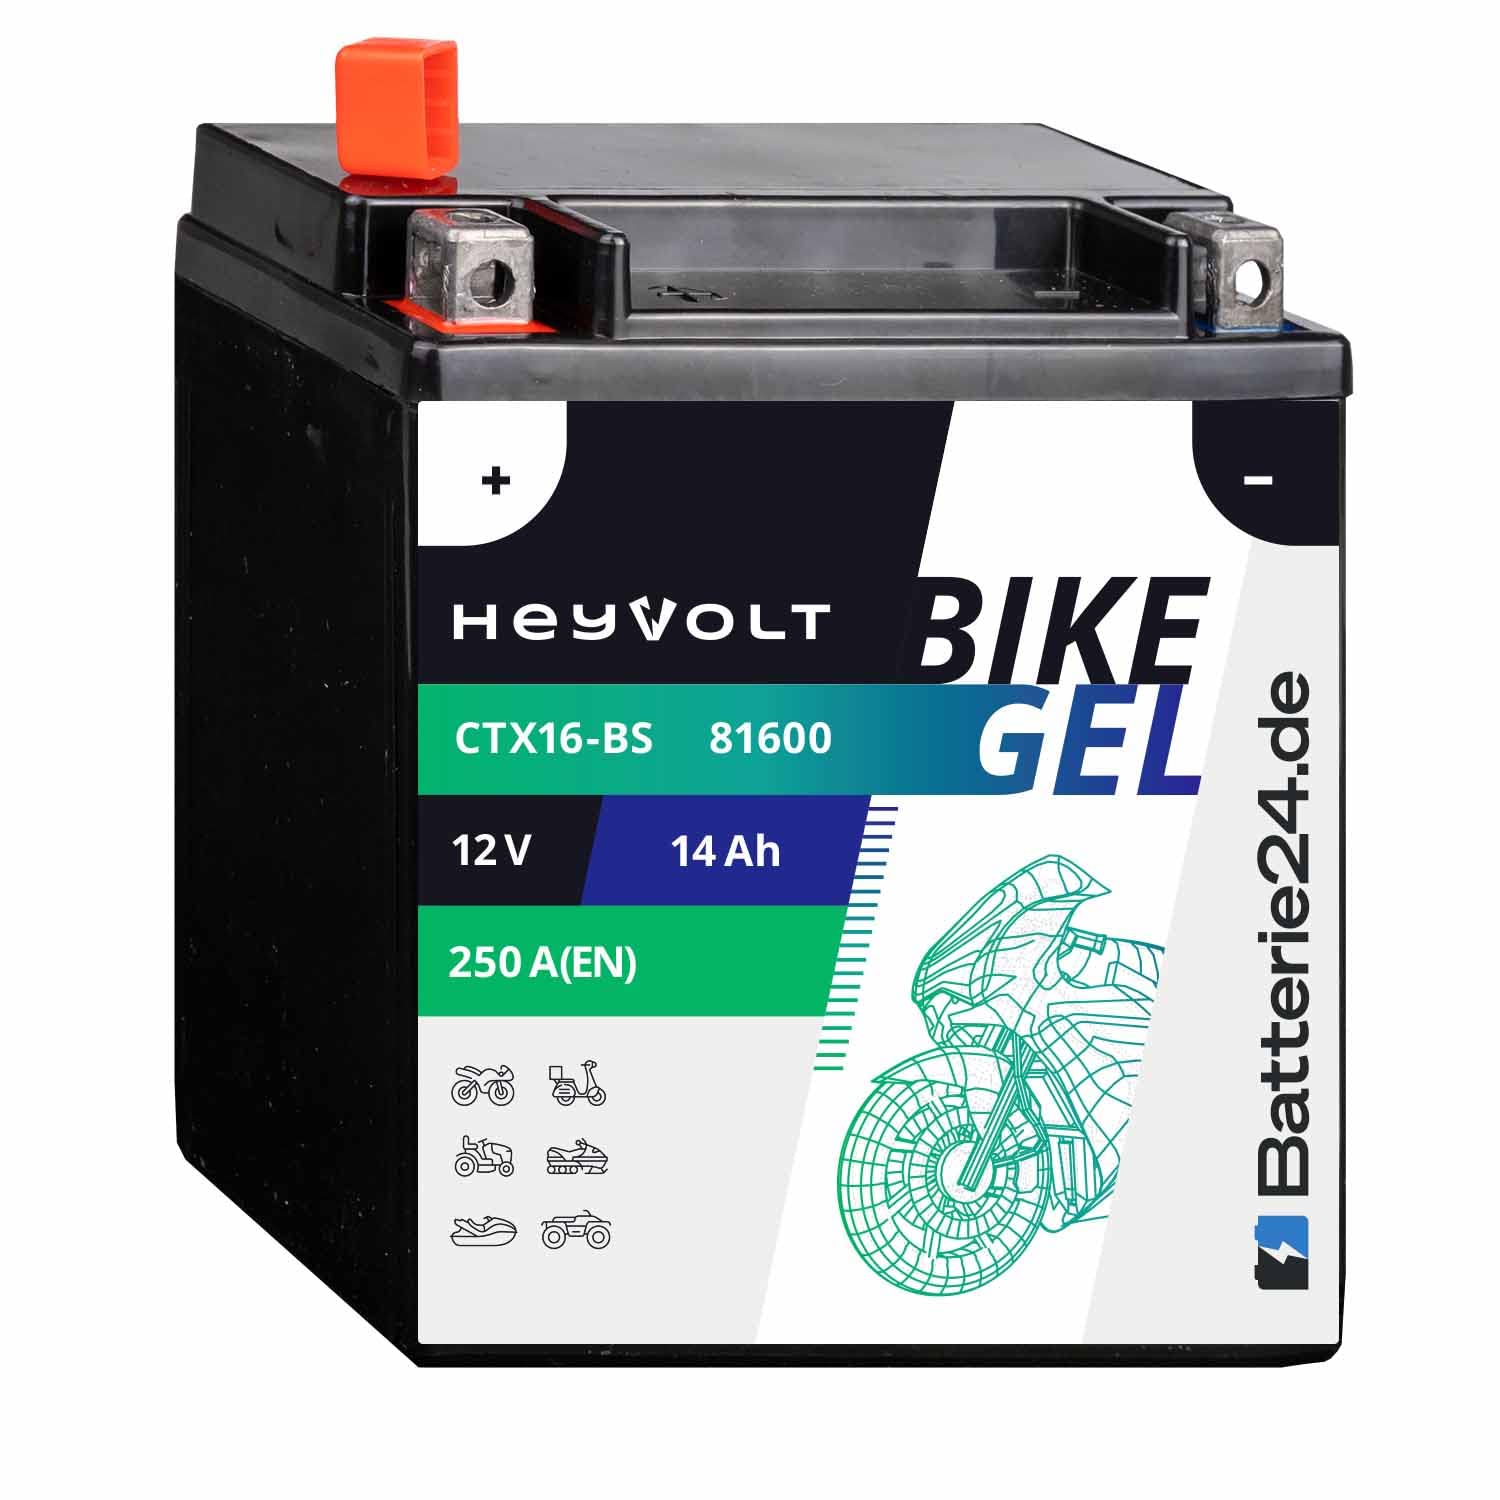 HeyVolt GEL Motorradbatterie 12V 14Ah YTX16-BS Suzuki VS 1400 Intruder VX51L VS1400 von Batterie24.de